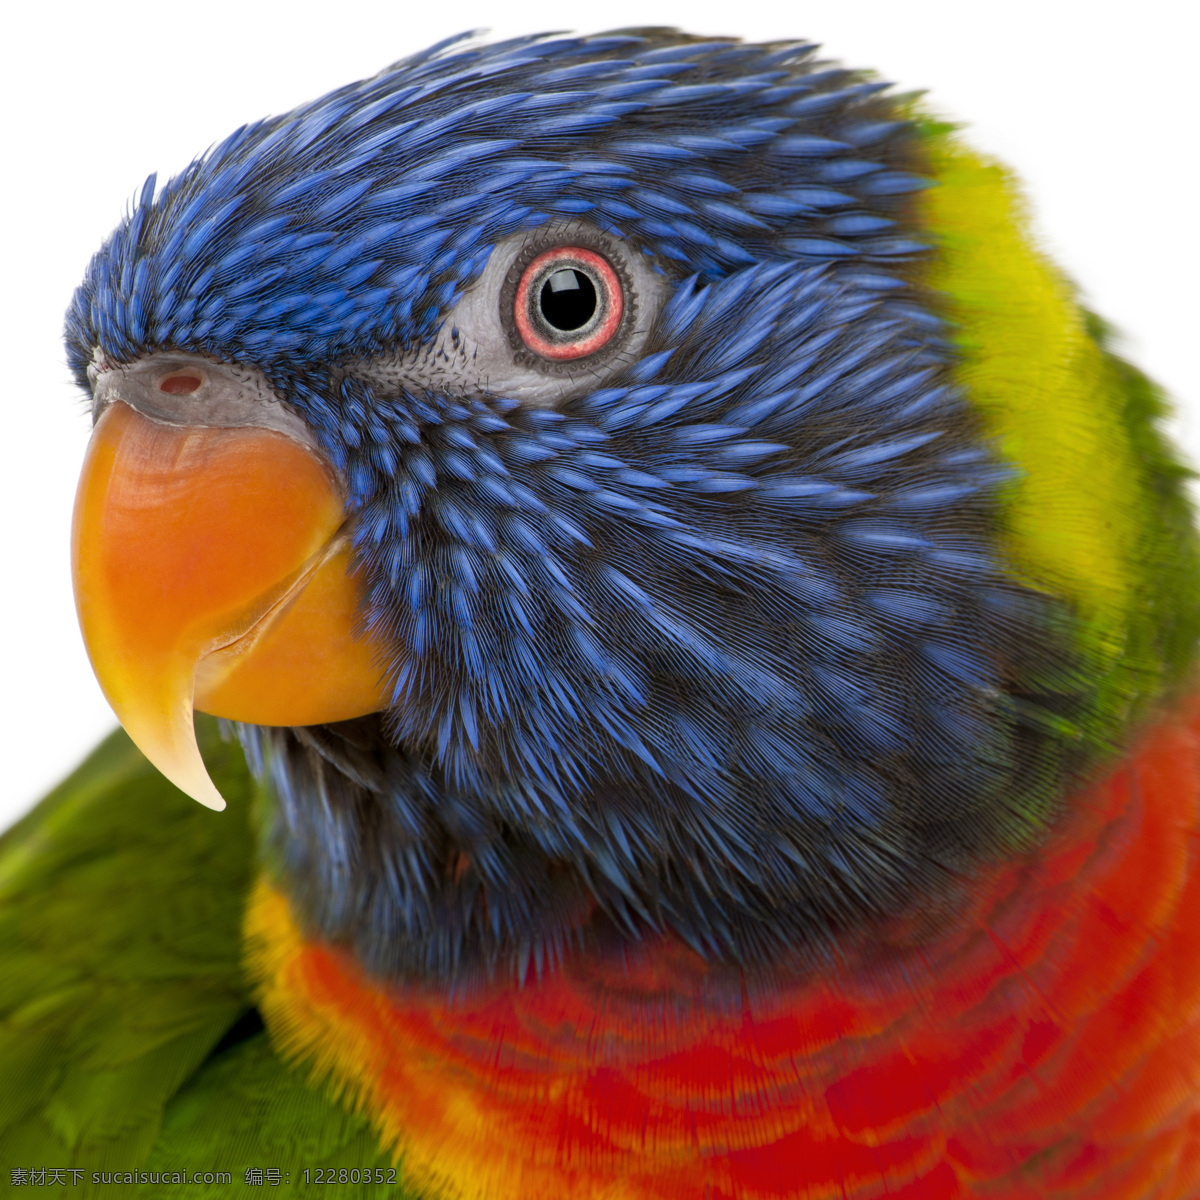 鹦鹉 头部 特写 parrots 飞鸟 生物 色彩 高清图片 鹦鹉头部特写 尖嘴 注视 空中飞鸟 生物世界